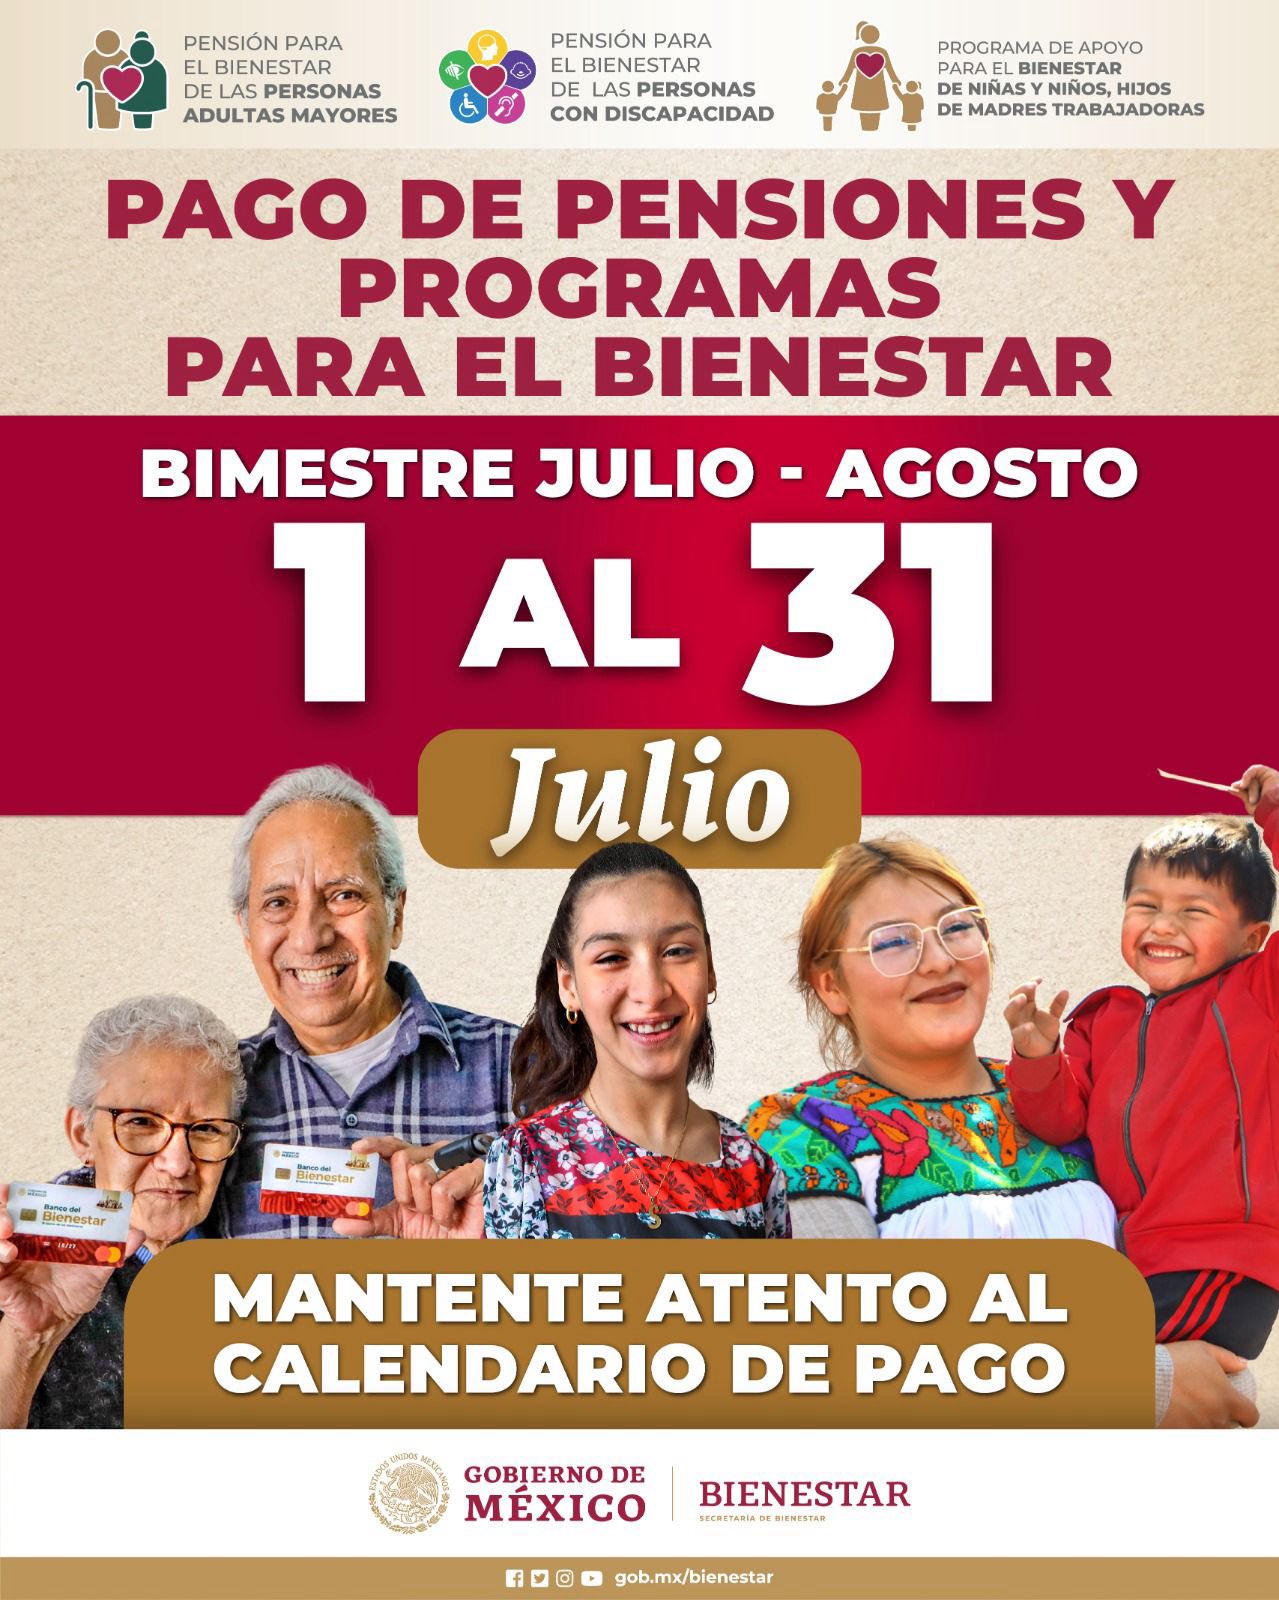 deposito-pension-discapacidad-julio-2024-cuando-depositan-la-pension-bienestar